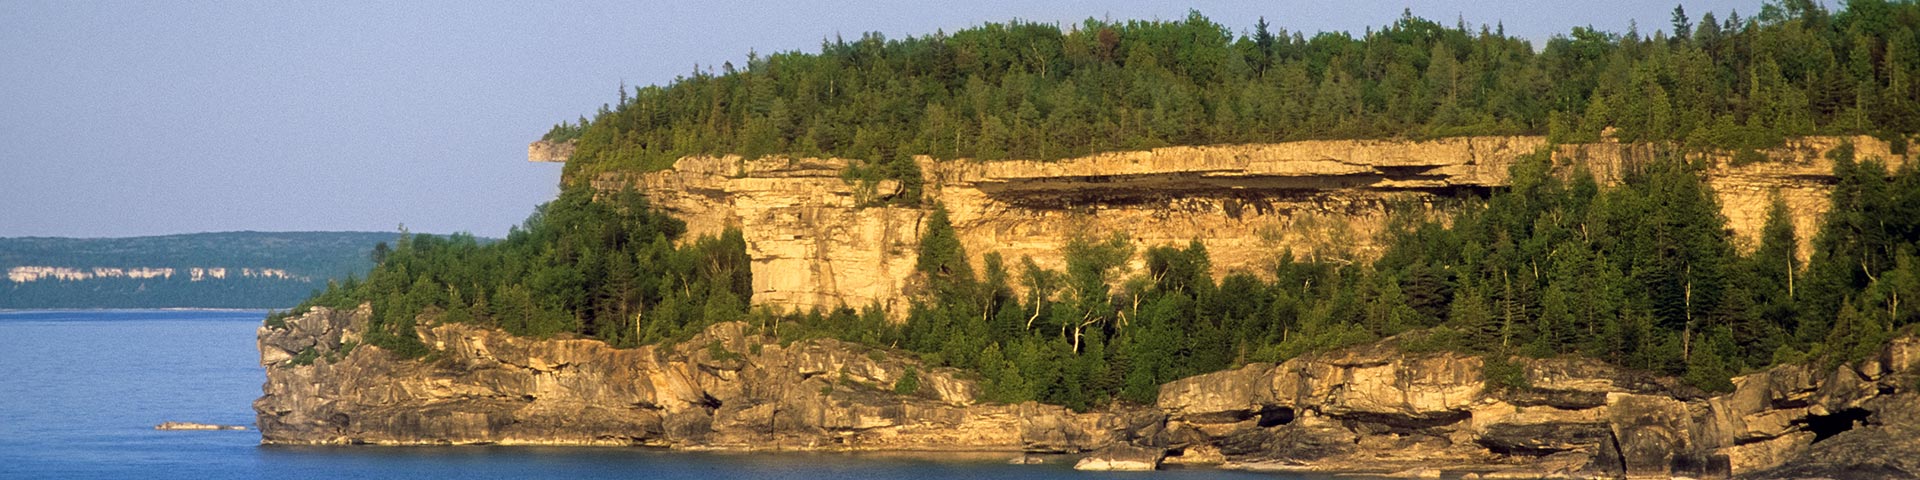 A rocky cliff along the shoreline.